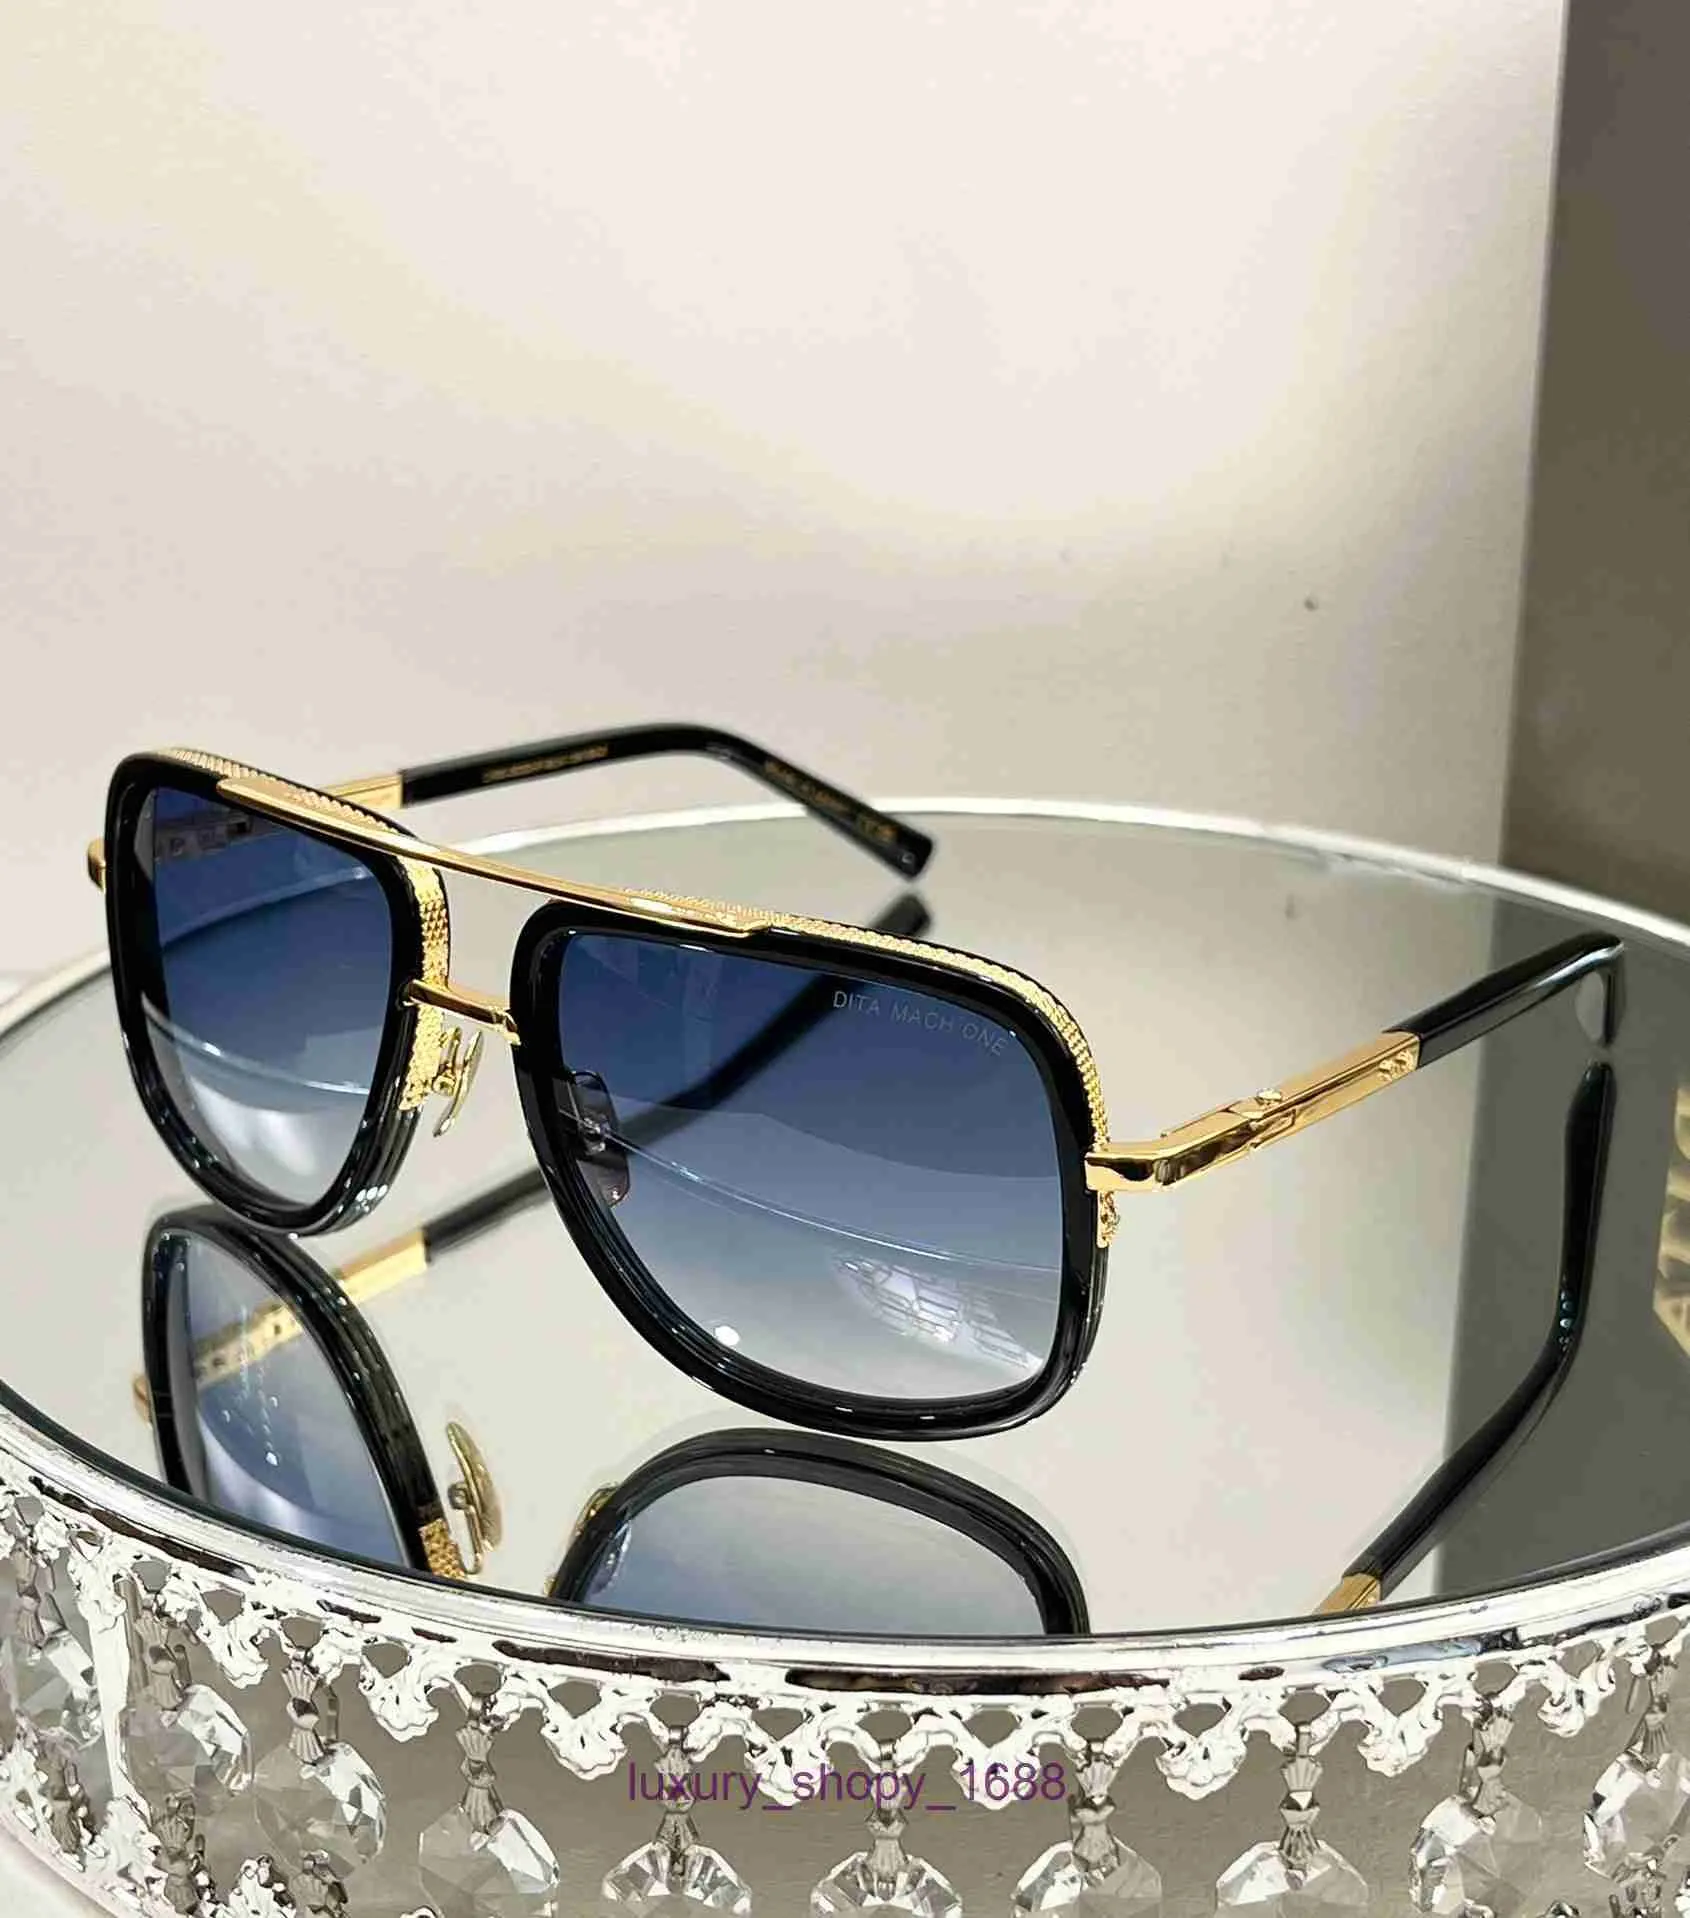 Designer de moda óculos de sol para mulheres e homens loja online DITA sapo espelho moldura de titânio MODELO: DRX-2030 com caixa L7UL